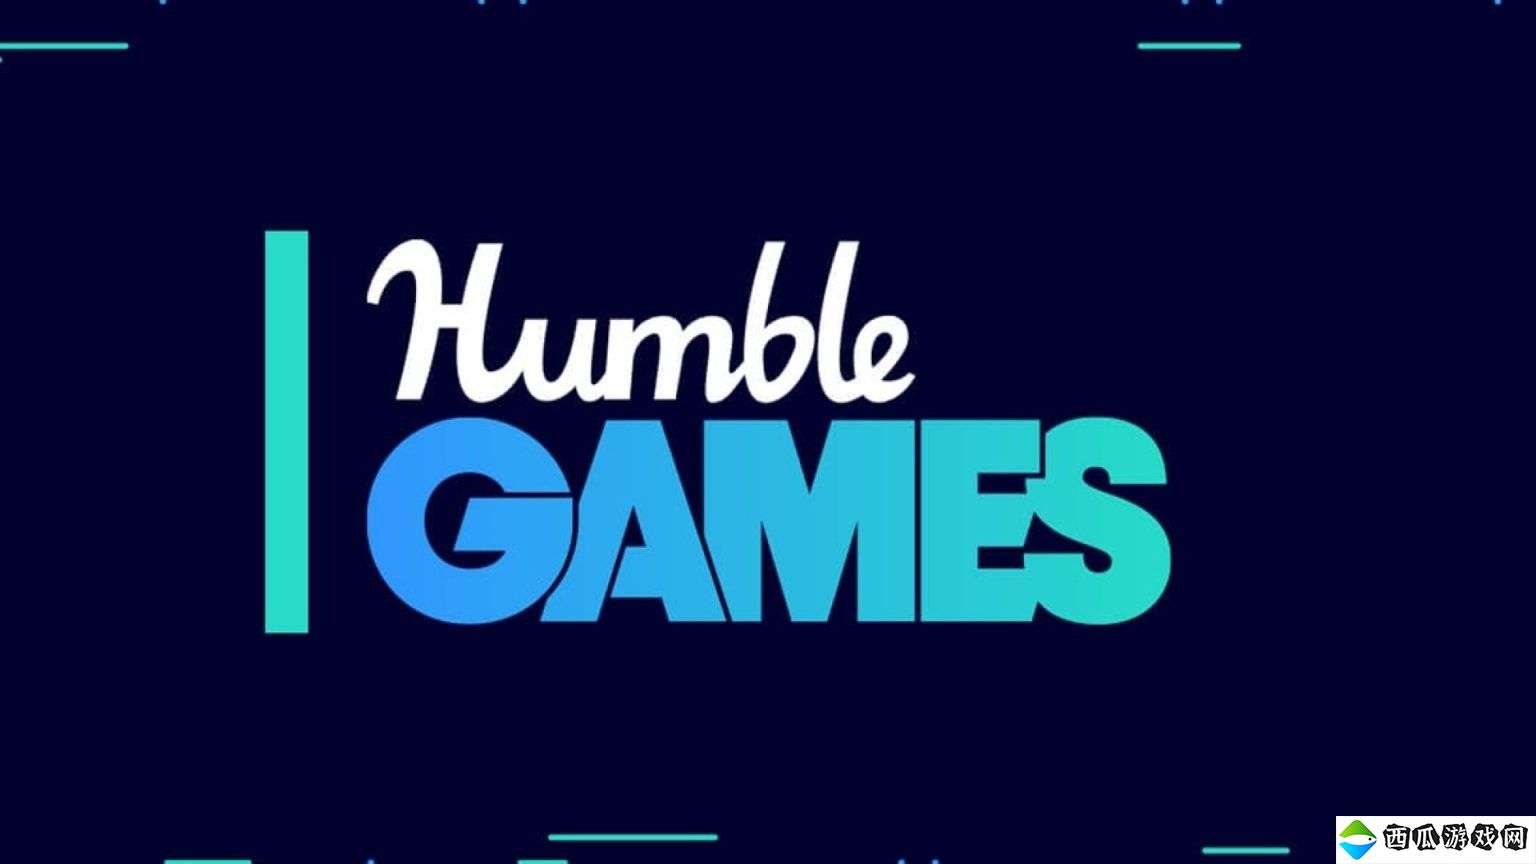 独立发行商Humble Games裁员36人 公司进行重组